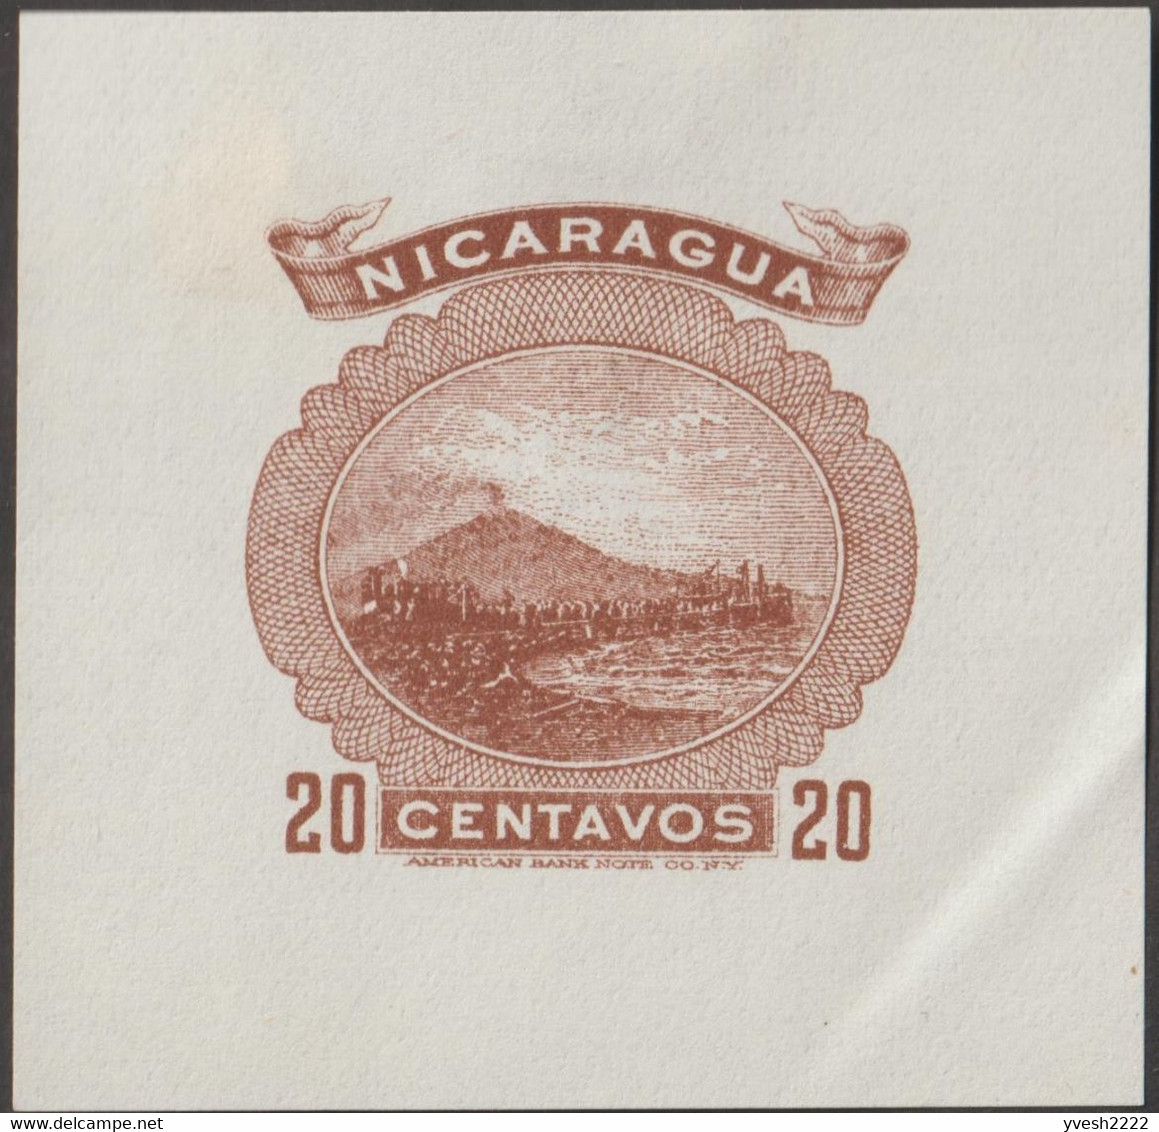 Nicaragua 1900. 7 essais d'affranchissements d'entiers postaux. Volcan Momotombo, de type stratovolcan, 1297 mètres